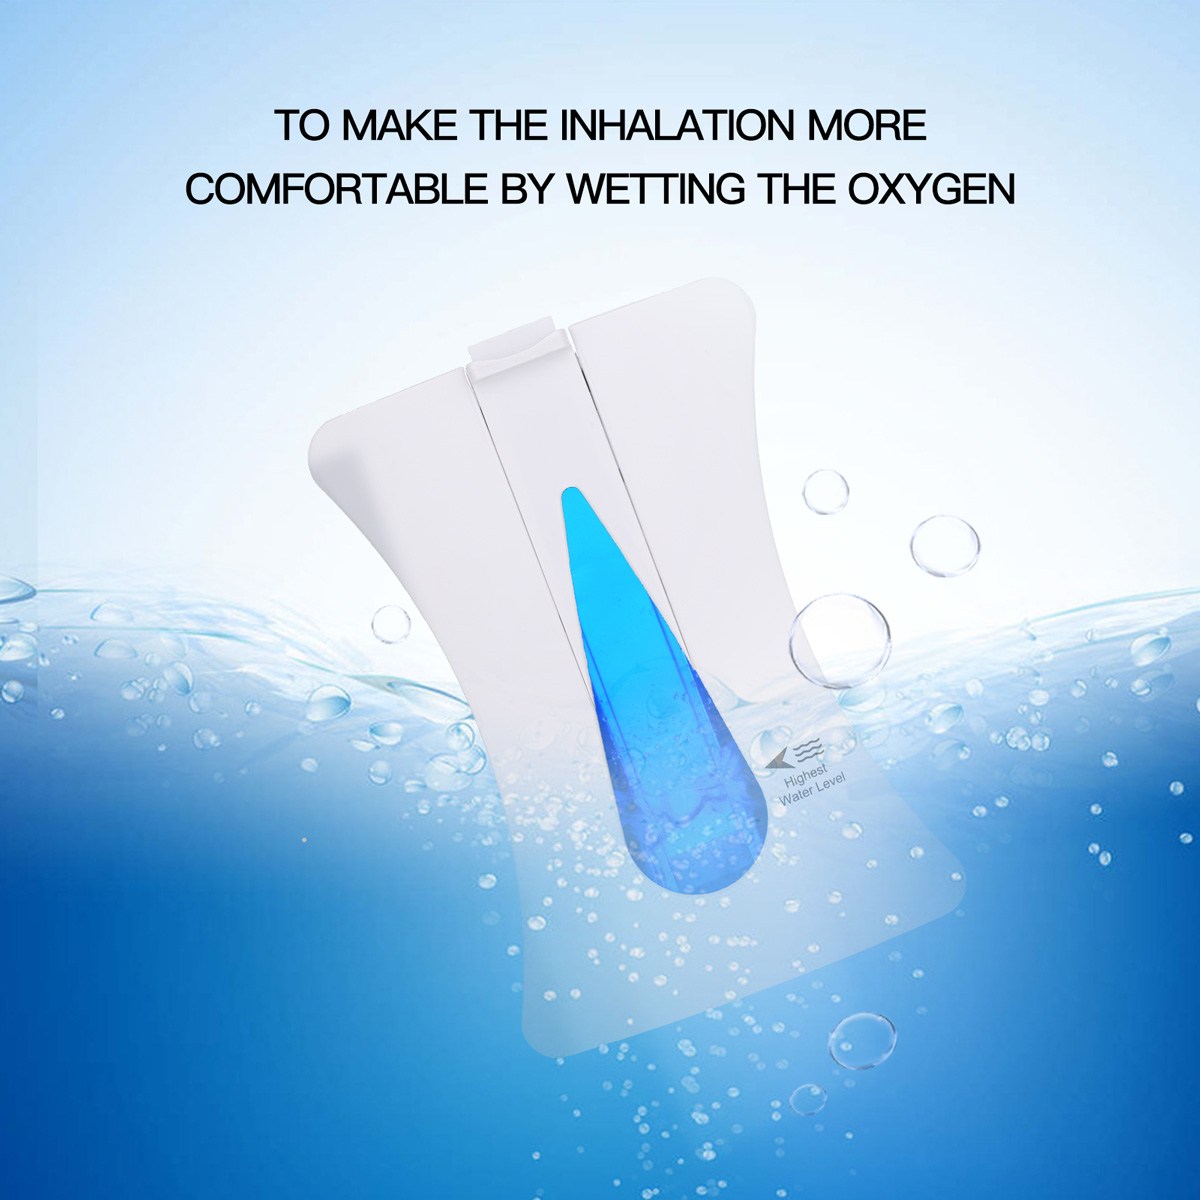 DEDAKJ 9 liter continuous flow home oxygen concentrator DE-2A